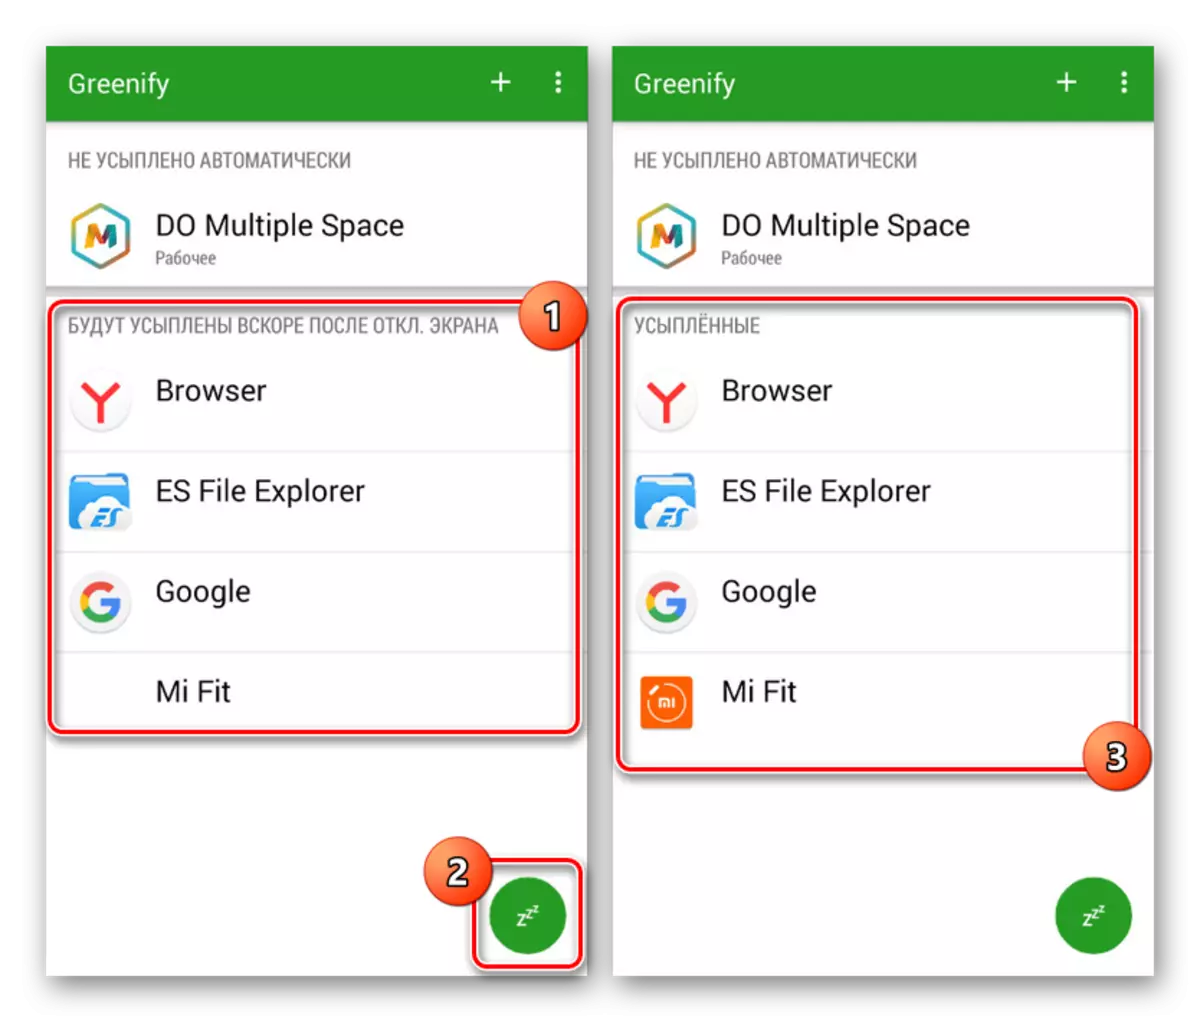 لوڈ، اتارنا Android پر Greenify درخواست میں ایپلی کیشنز کو حل کرنے